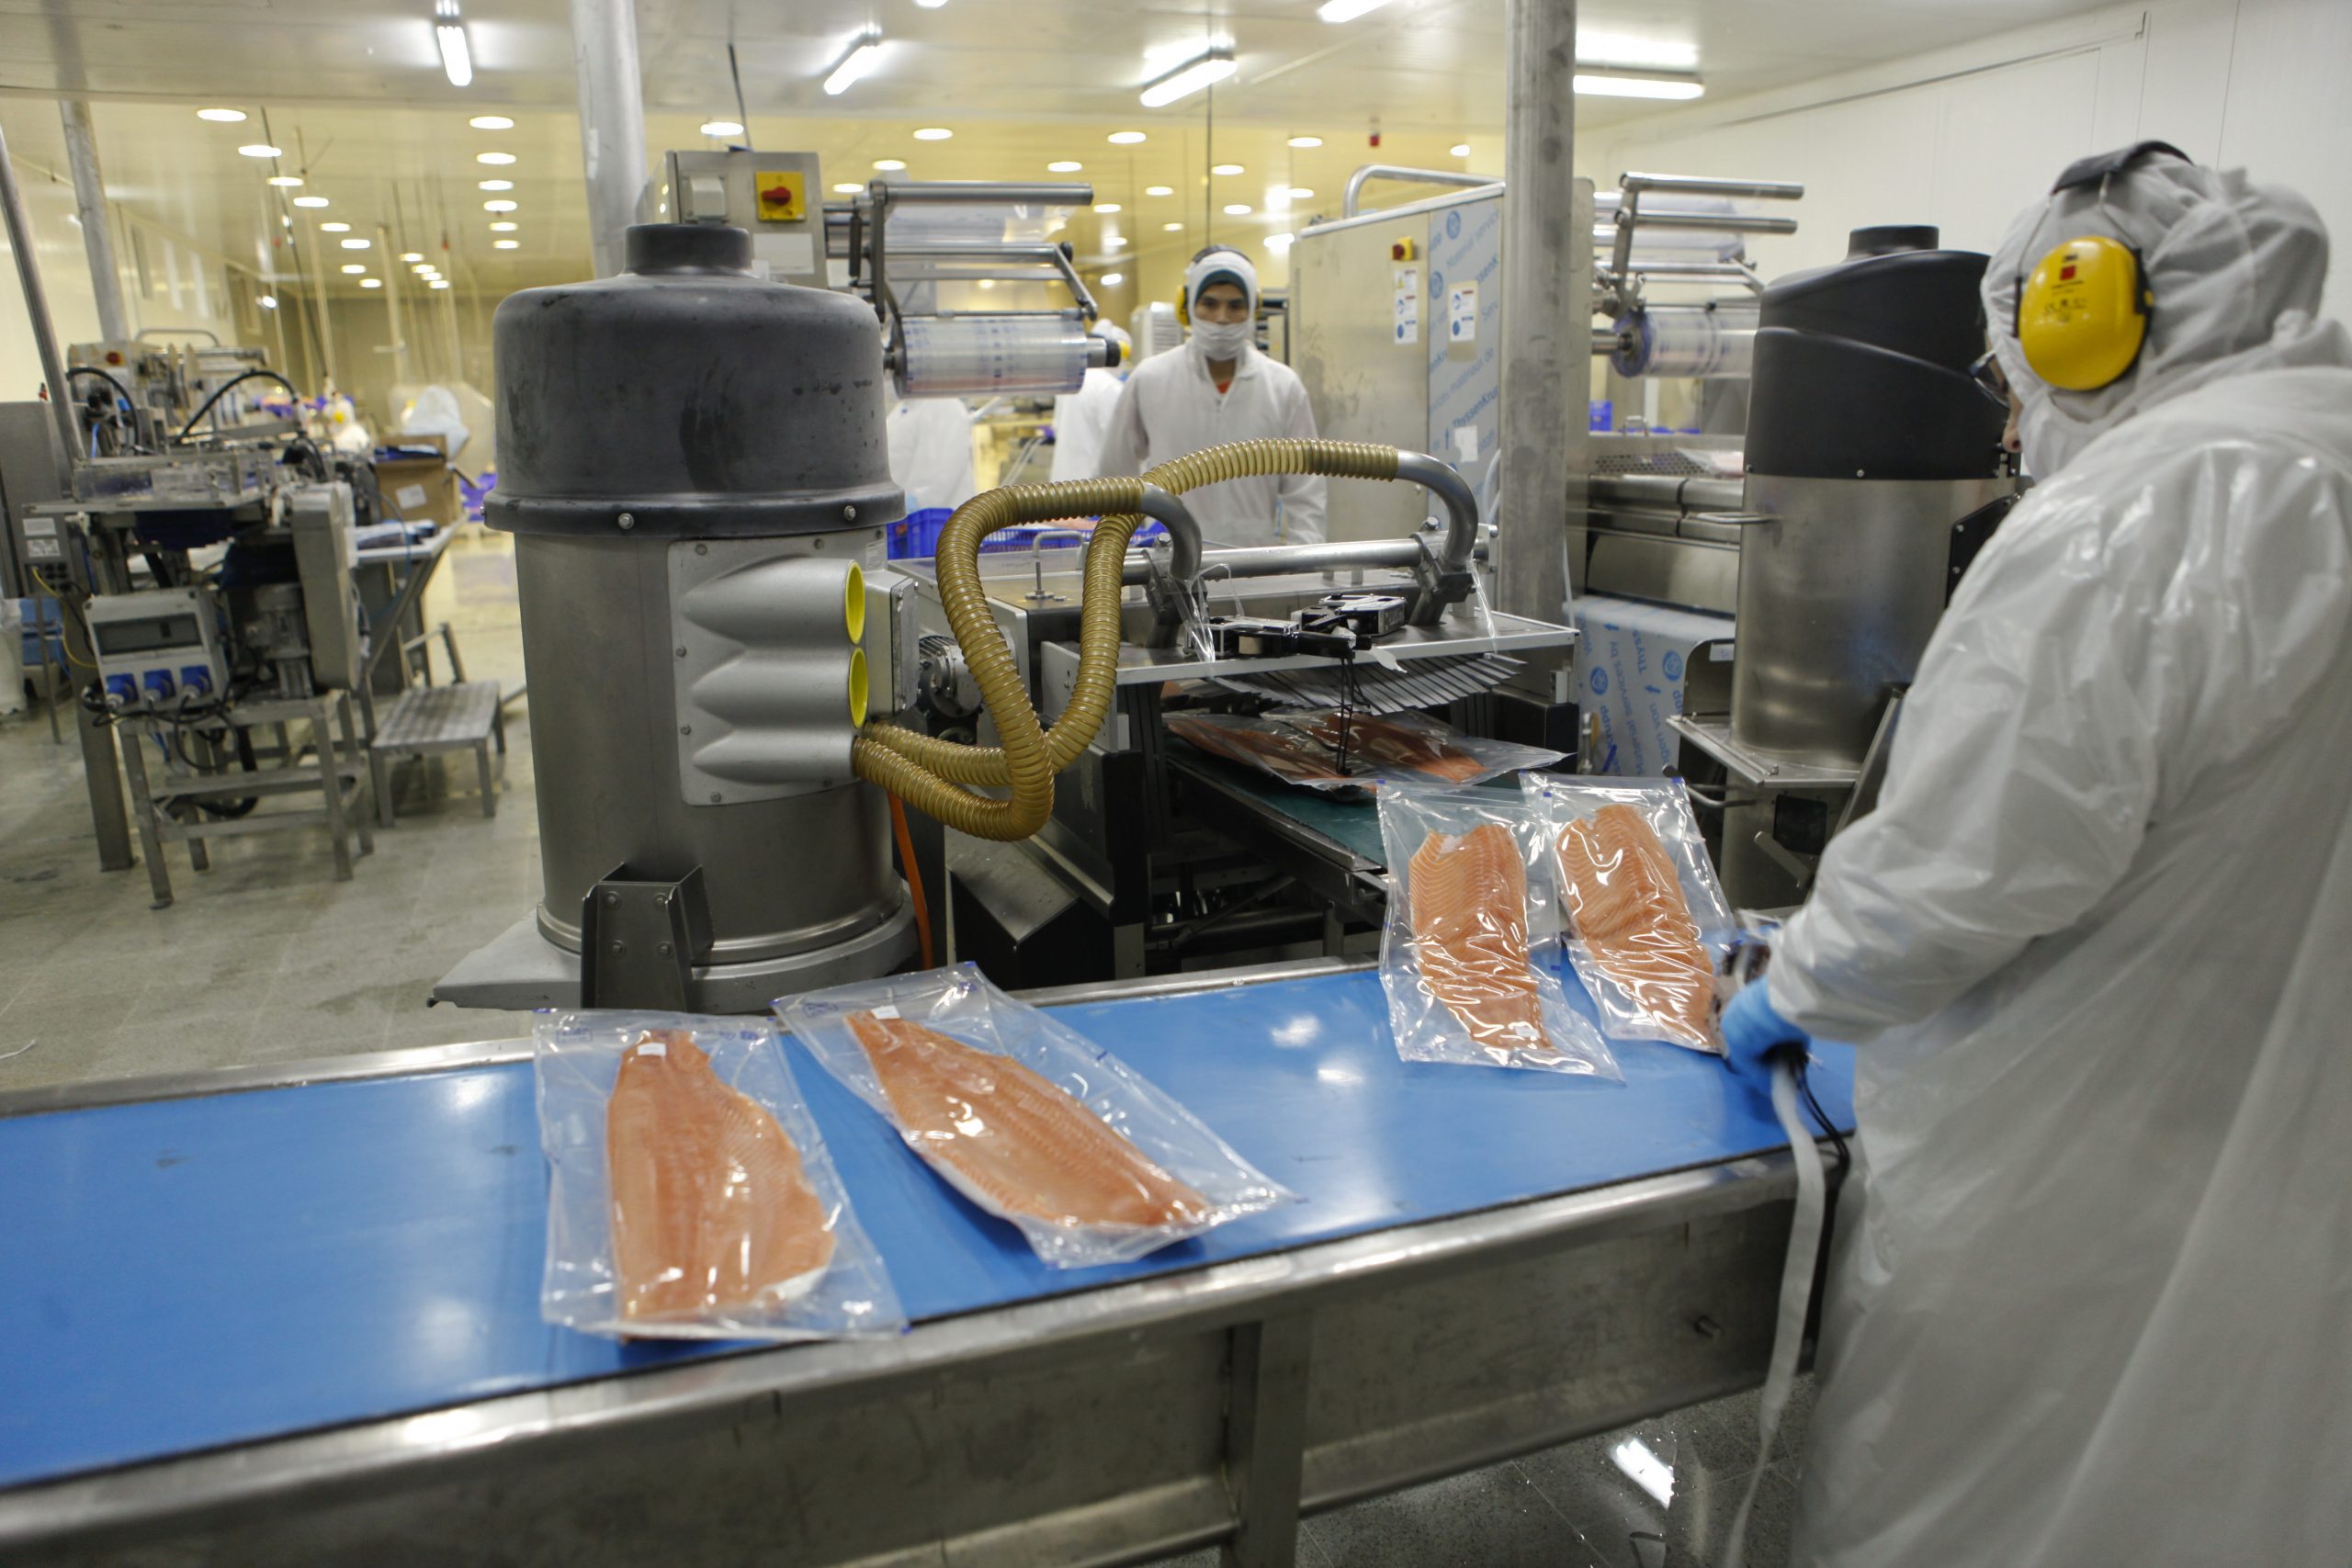 Salmonicultura: El rol clave de los prevencionistas de riesgos durante la pandemia